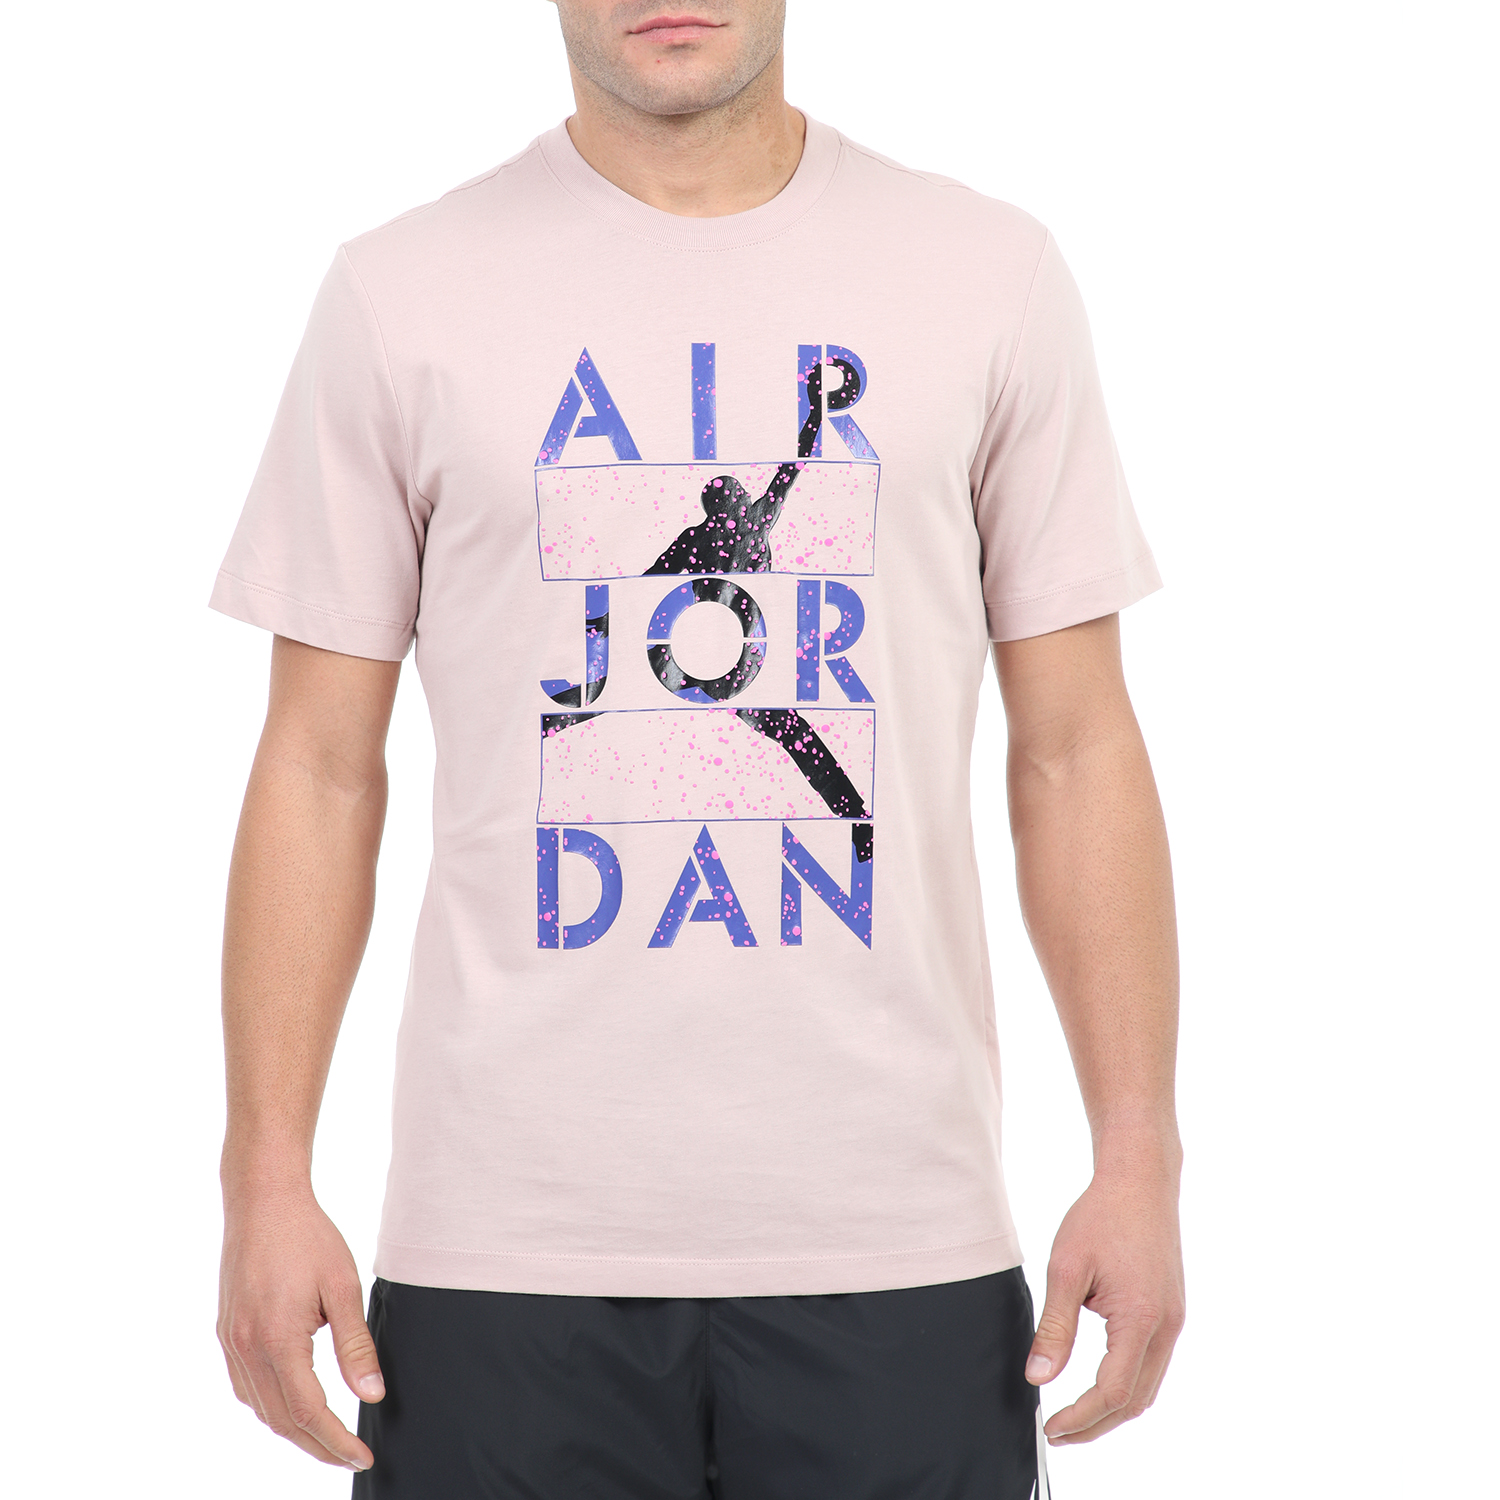 Ανδρικά/Ρούχα/Αθλητικά/T-shirt NIKE - Ανδρικό t-shirt NIKE Jordan Stencil μοβ